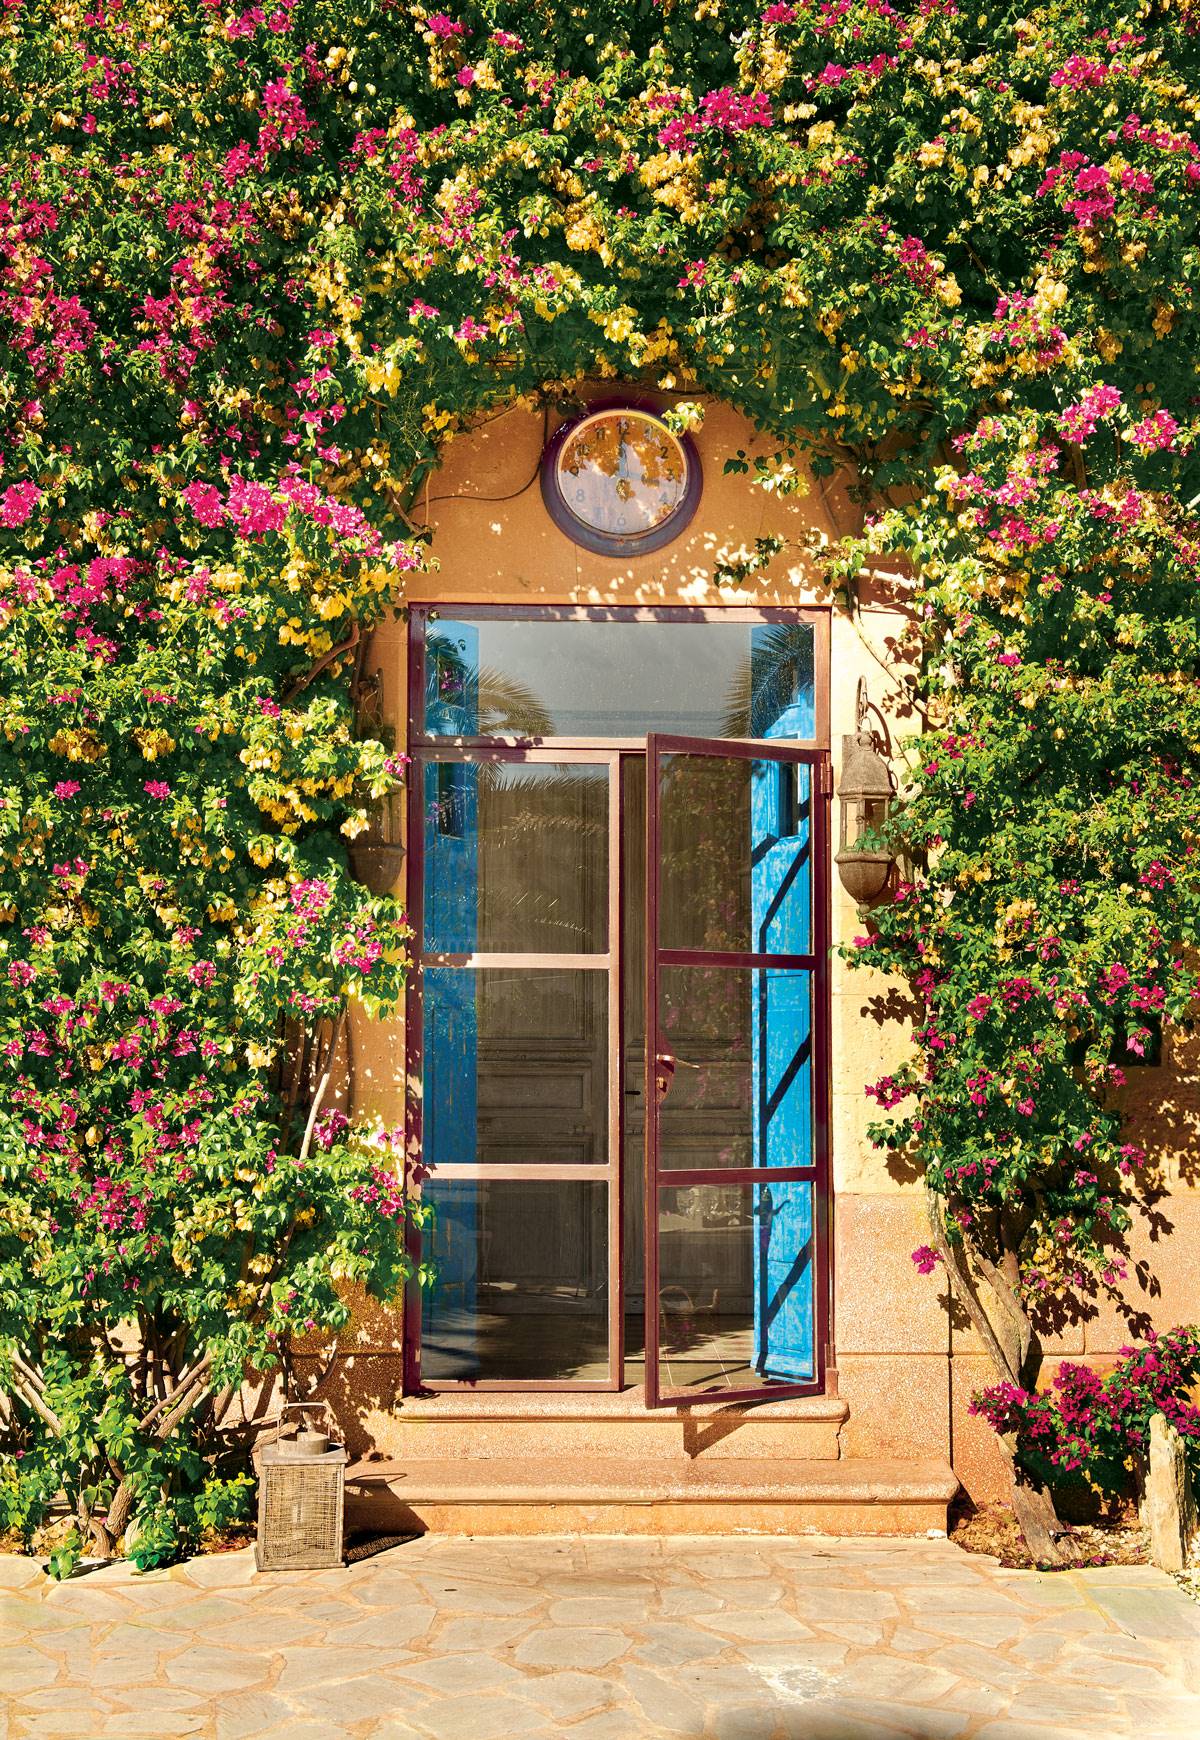 Puerta de entrada a casa rústica con puerta acristalada, reloj y bouganvilla-378425